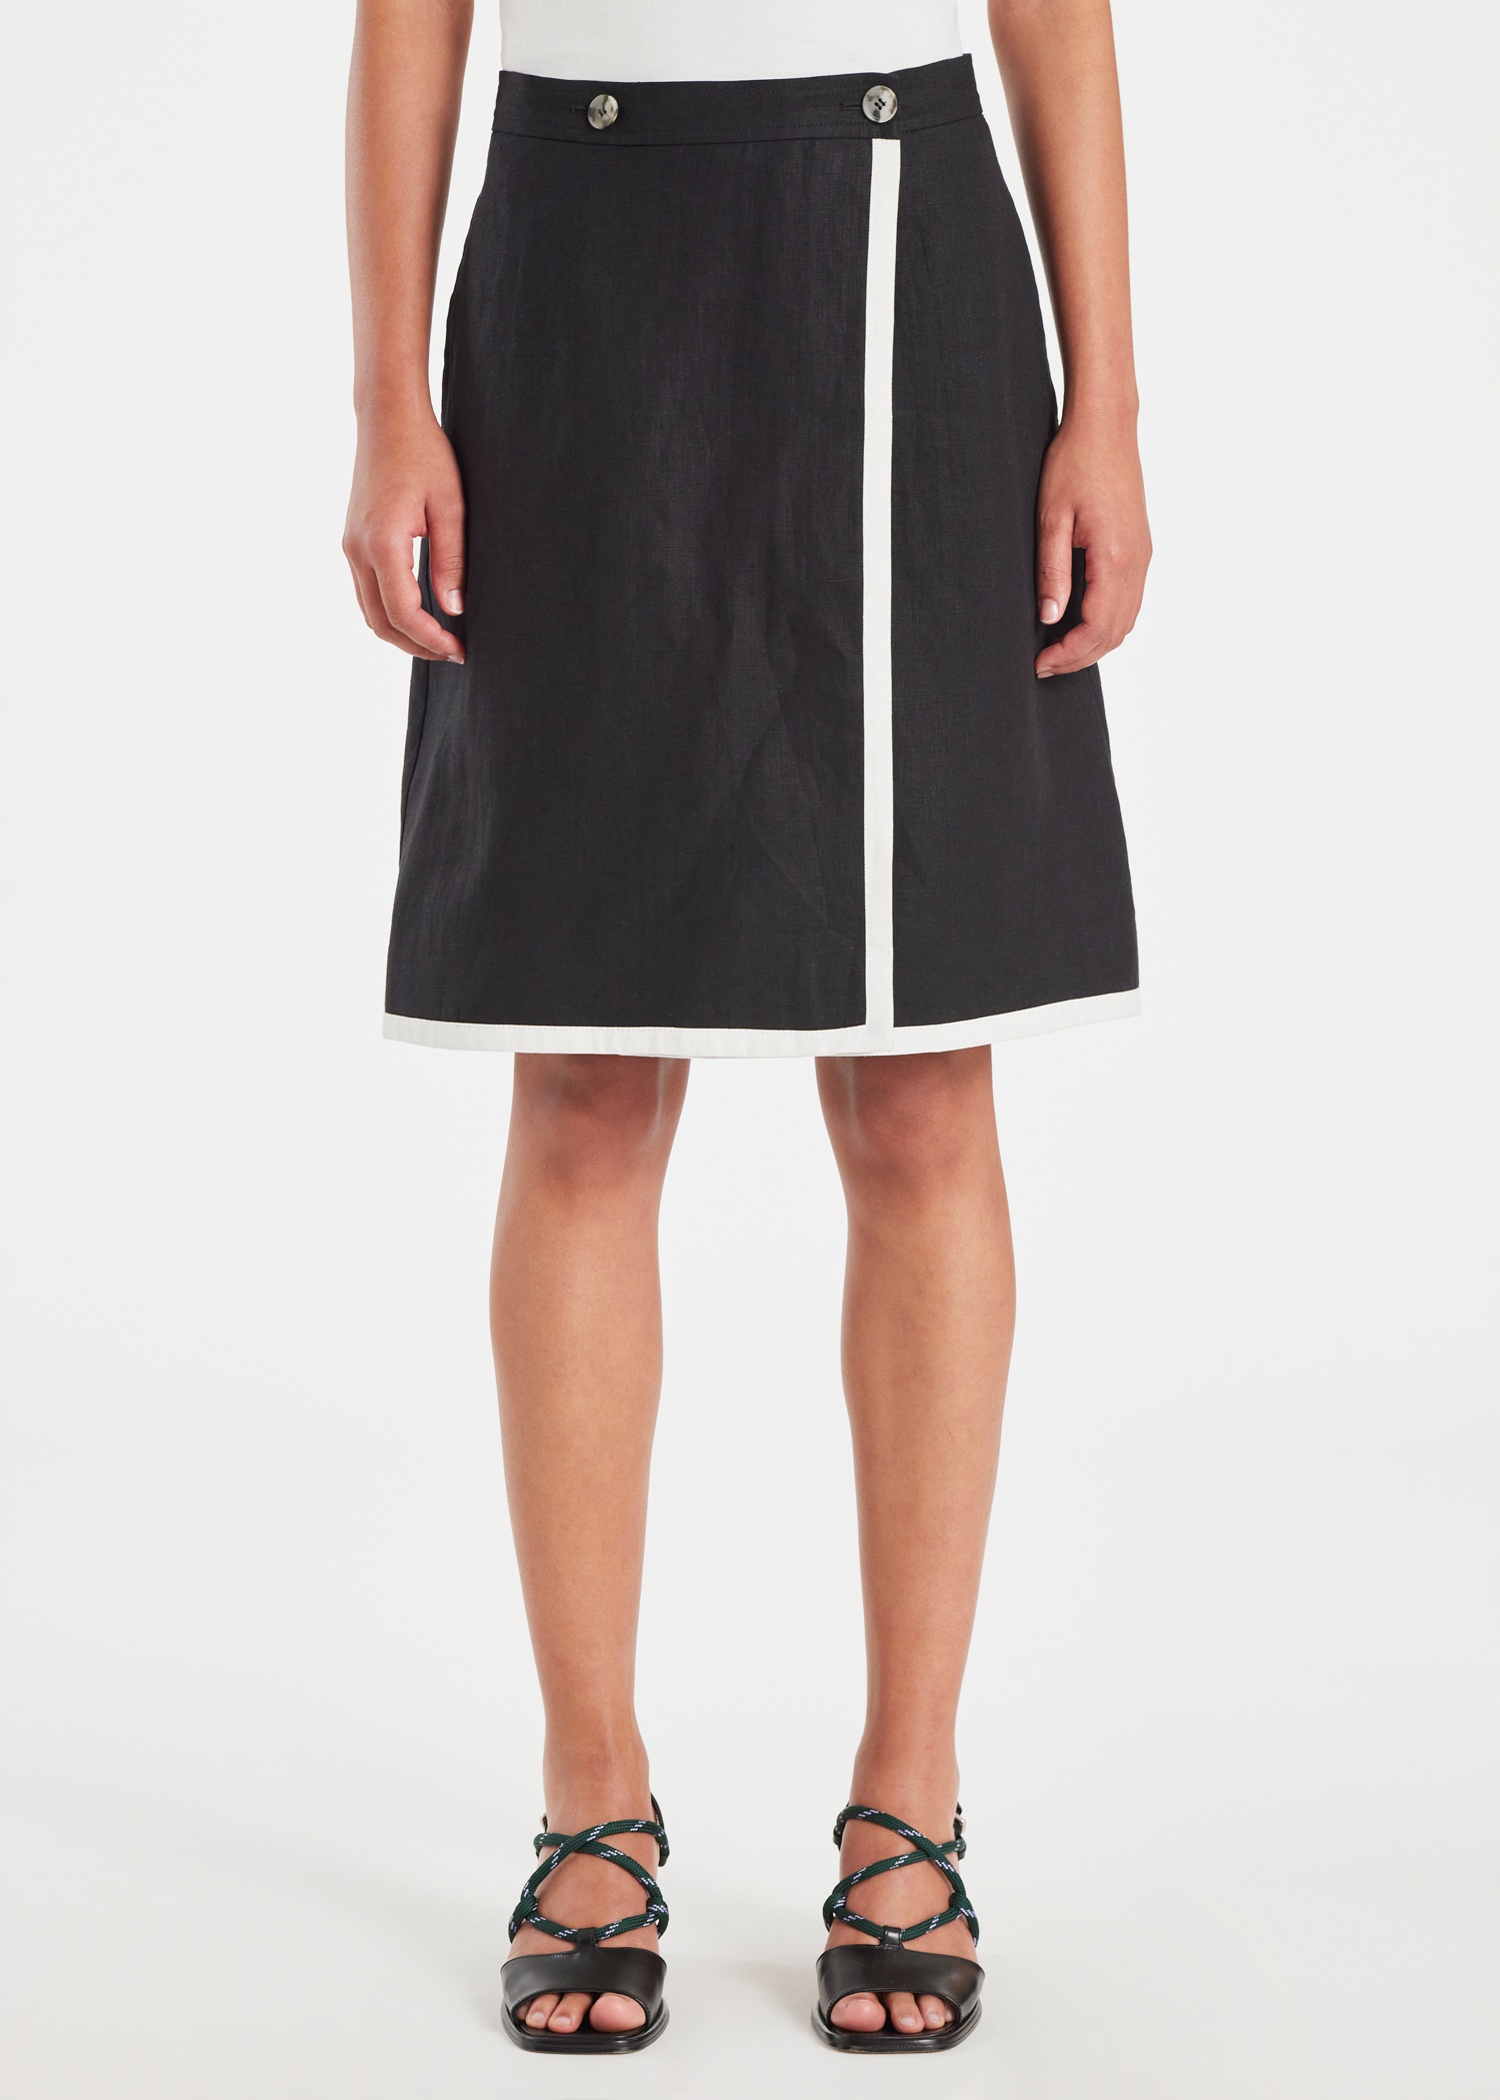 Women's Black Linen Wrap Skirt - 3